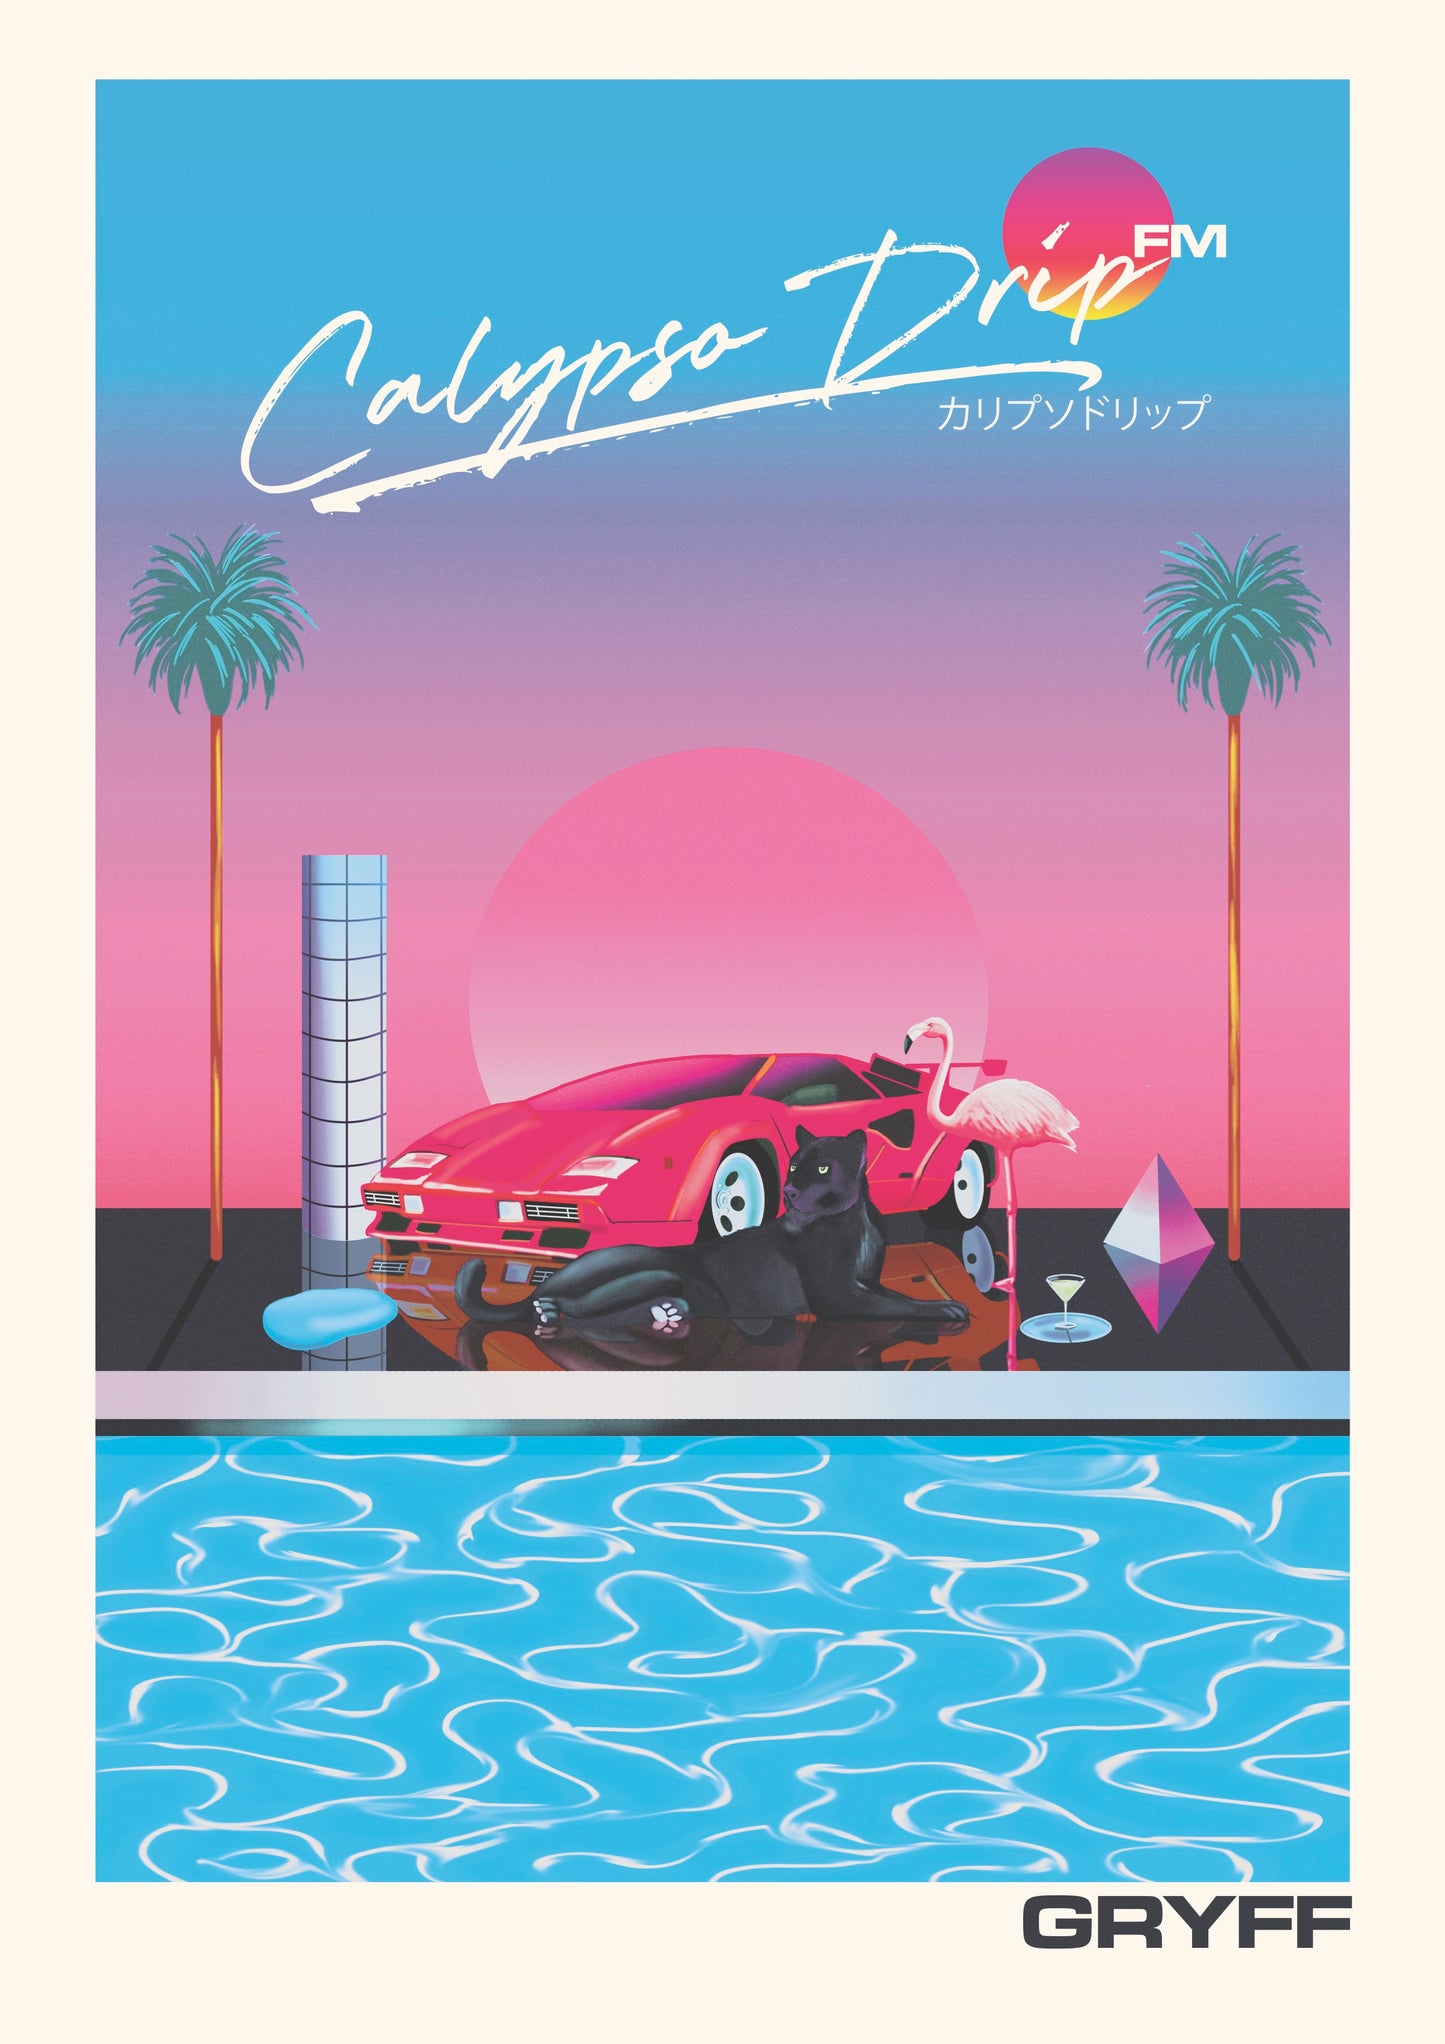 GRYFF - Calypso Drip FM - Poster A2 (Gloss) 130 gsm